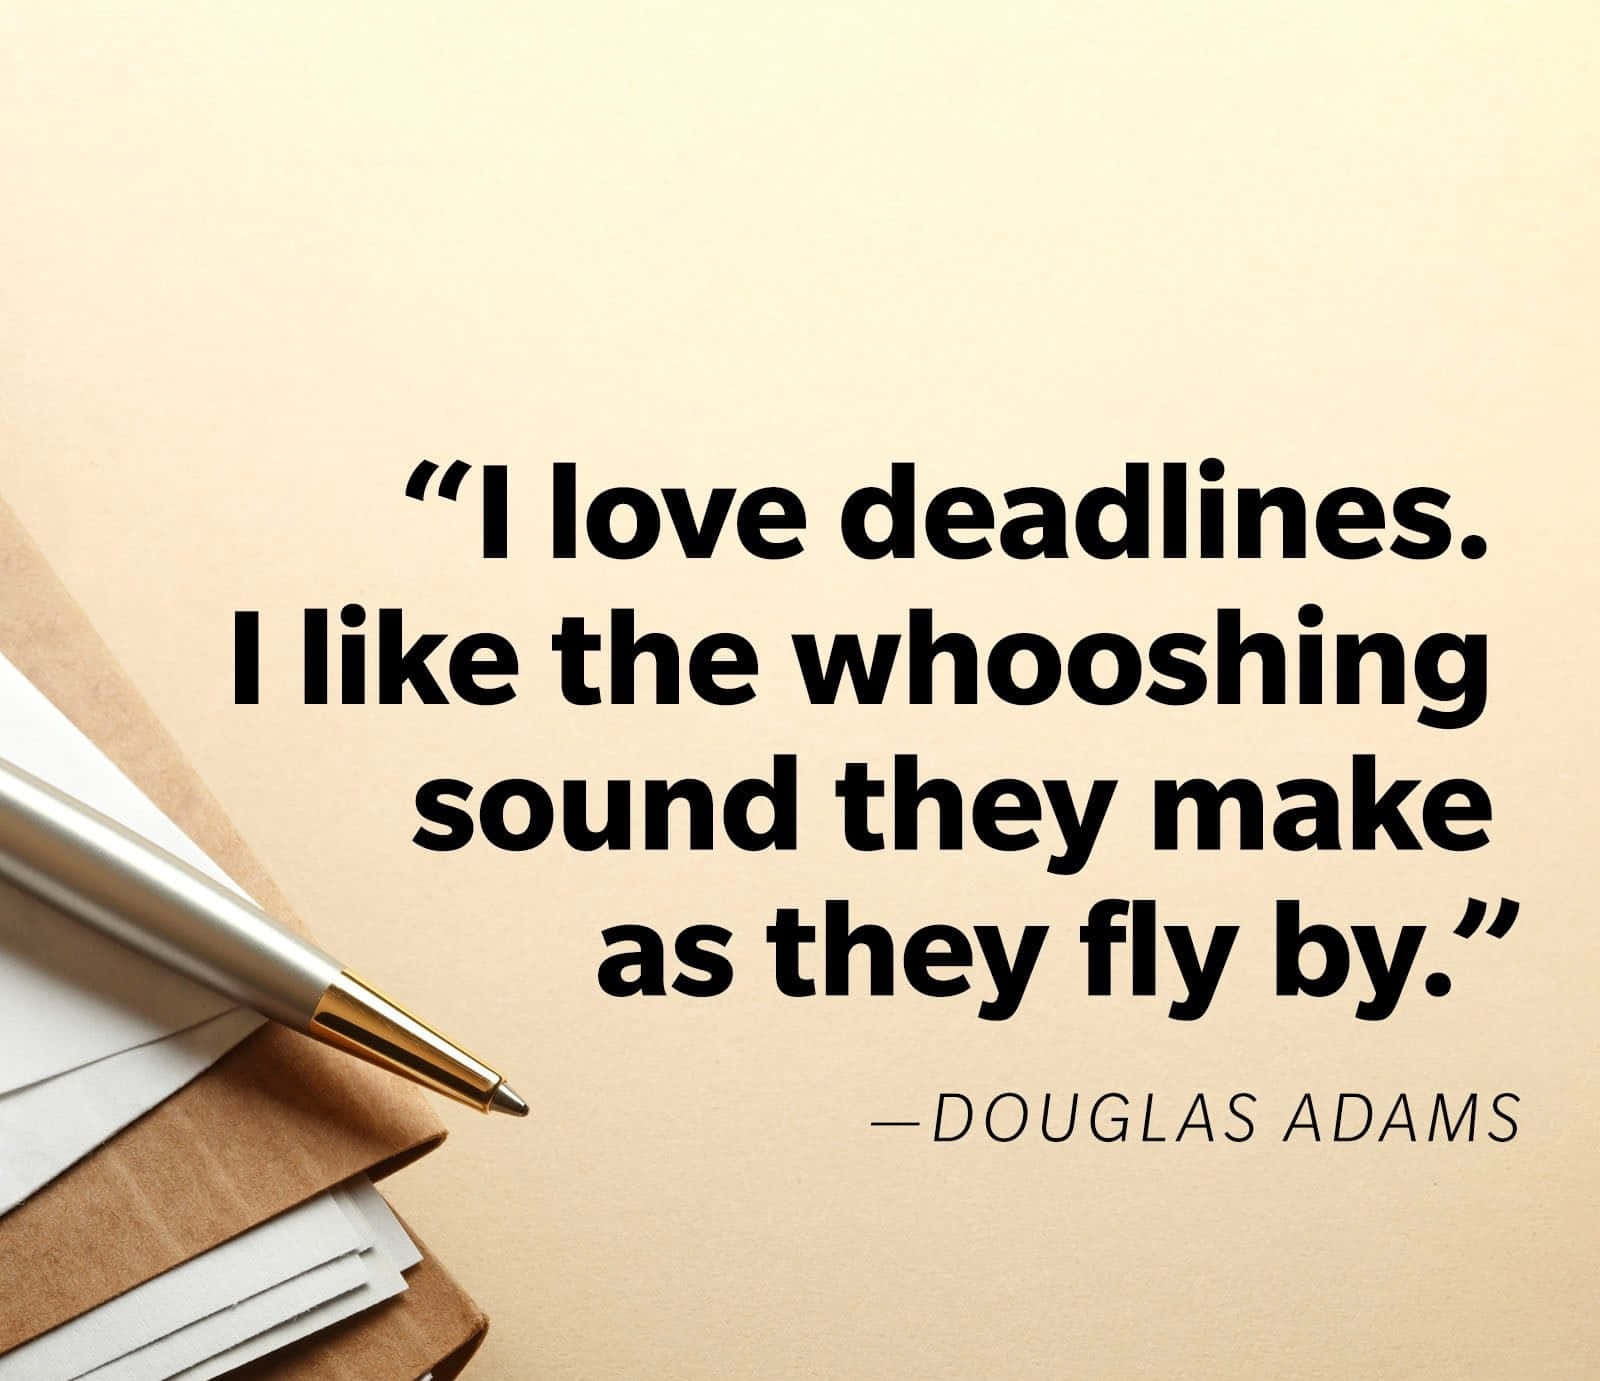 Douglas Adams Deadlines Quote Wallpaper